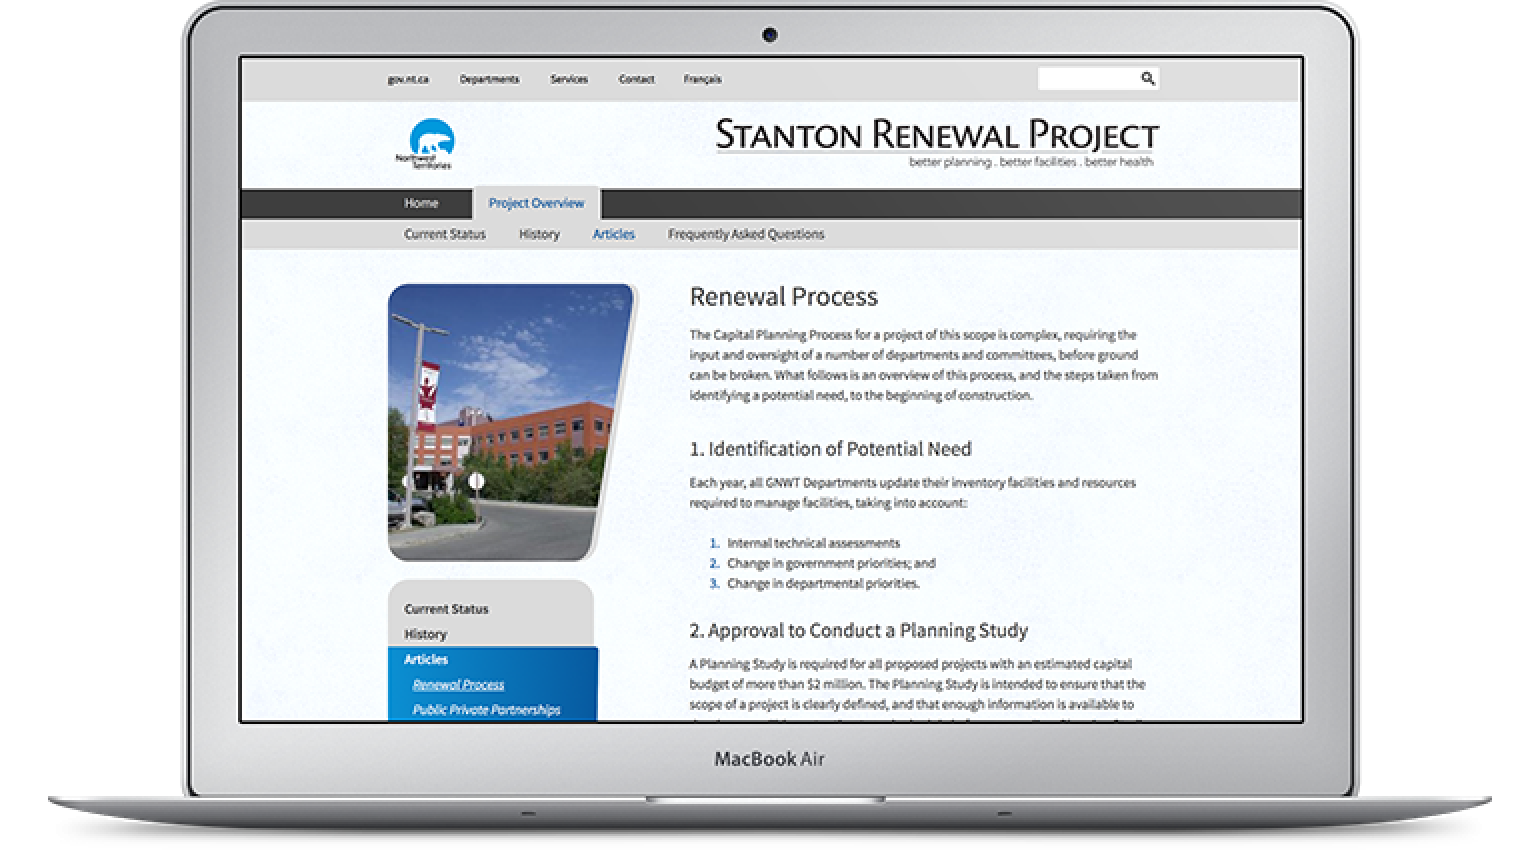 Stanton Renewal Project macbook